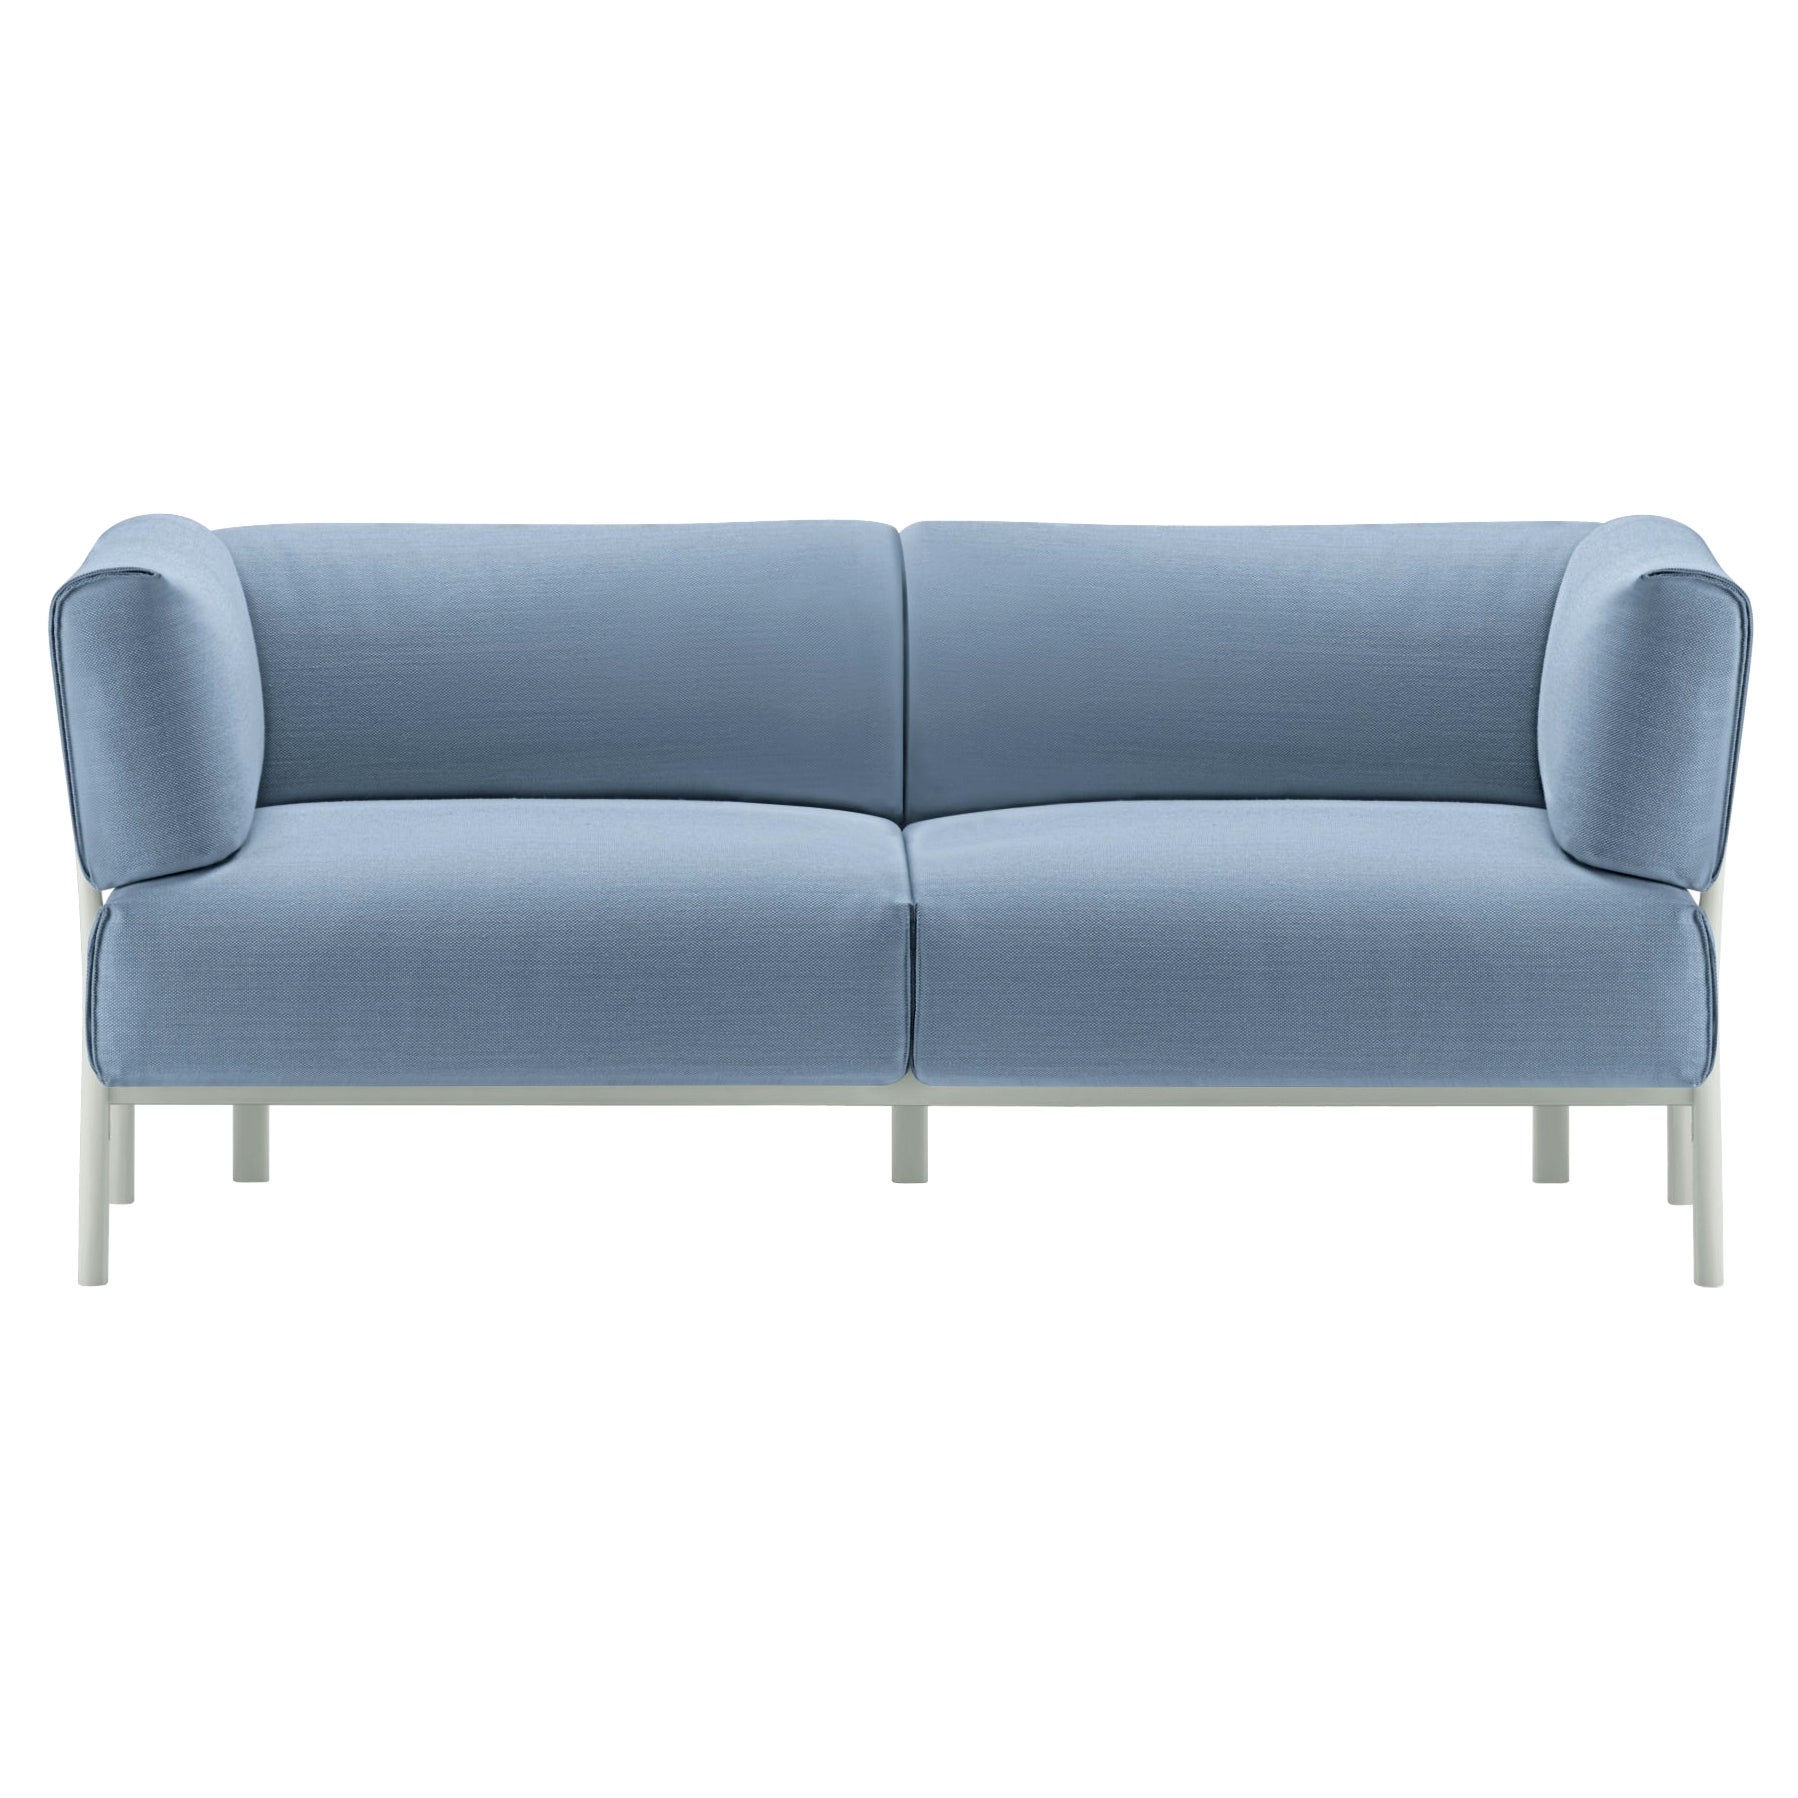 Alias 861 Eleven Sofa 2 Seater avec assise bleue et cadre en aluminium laqué blanc